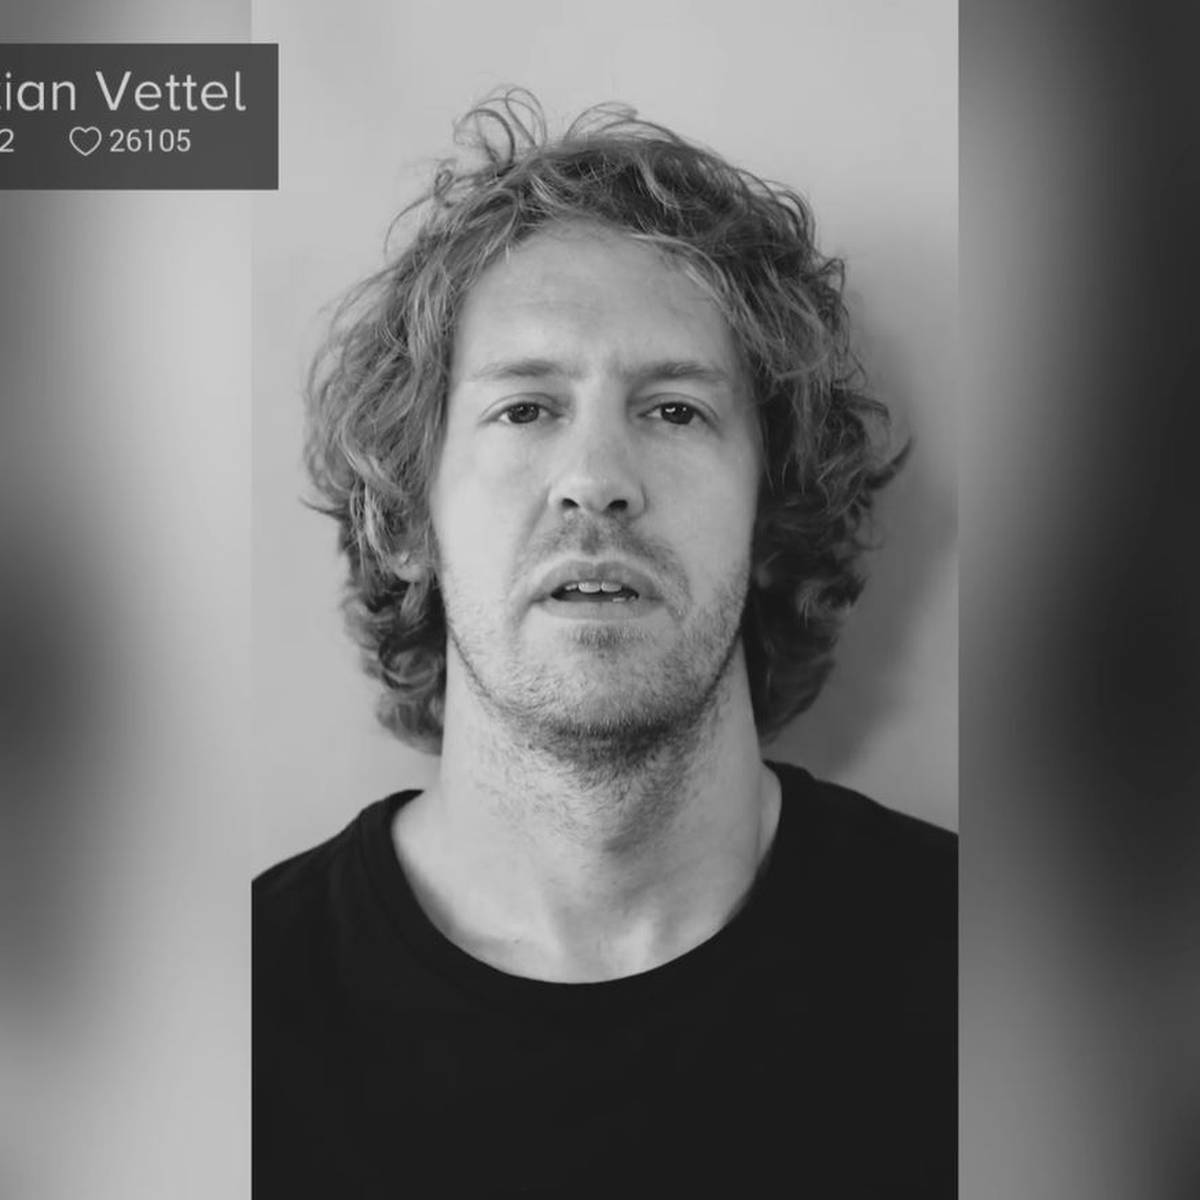 "Wer bin ich?" Vettels bemerkenswertes Video-Statement